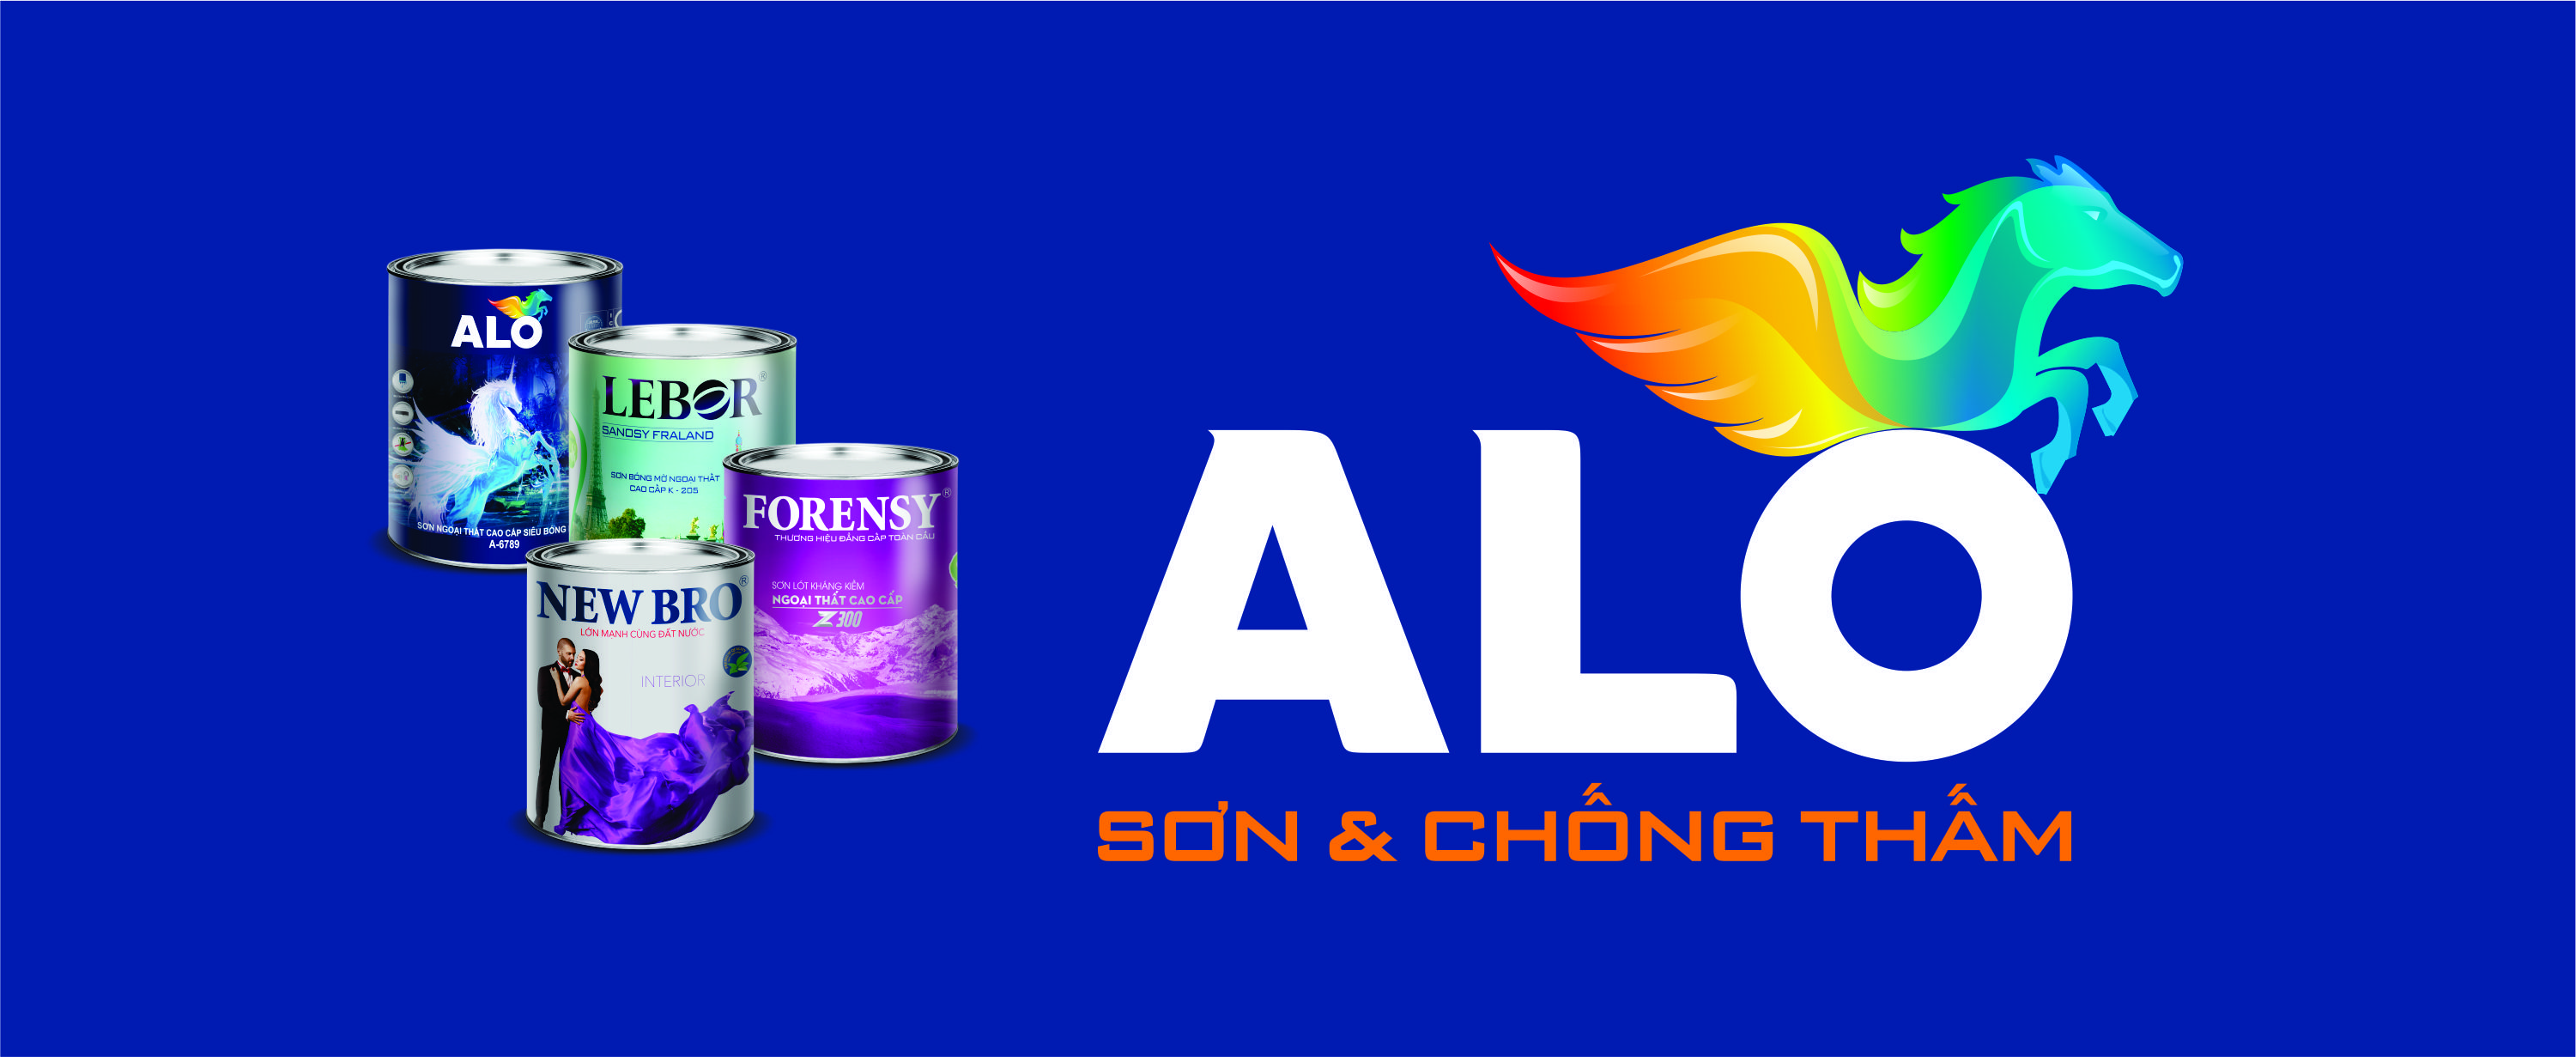 Tập đoàn ALO VIỆT NAM: Với nhiều năm kinh nghiệm trong ngành sơn, tập đoàn Alo Việt Nam đã khẳng định được vị trí của mình trên thị trường. Xem hình ảnh liên quan để hiểu thêm về sự đa dạng sản phẩm của tập đoàn.